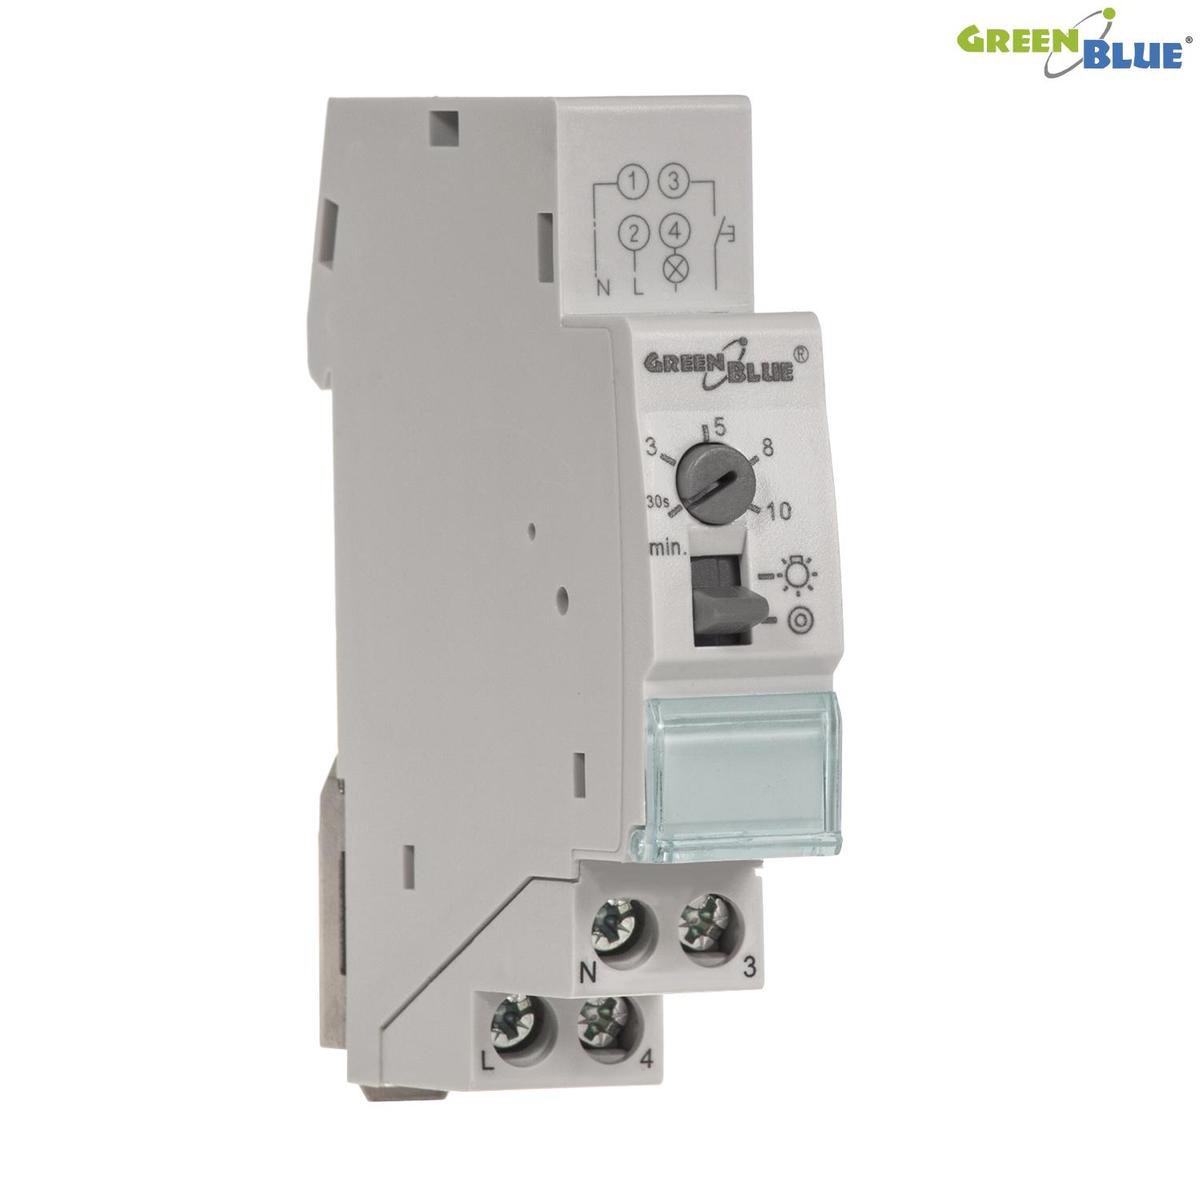 Interrupteur minuterie numérique GreenBlue GB104 - Accessoire réseau